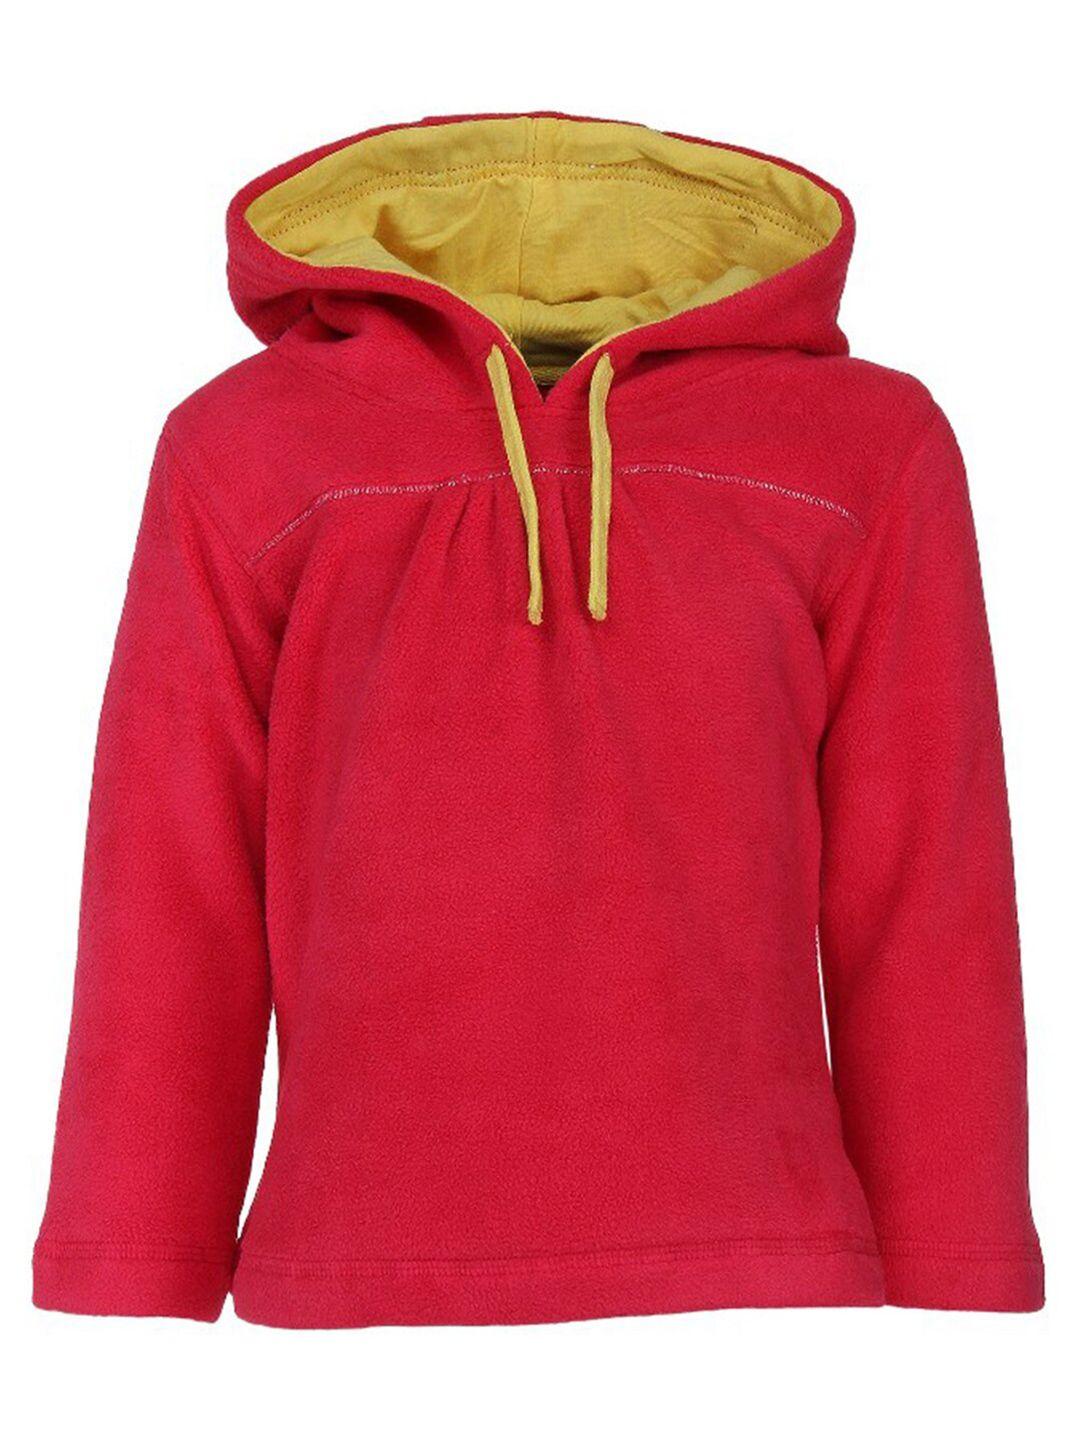 nino bambino unisex kids red hooded sweatshirt